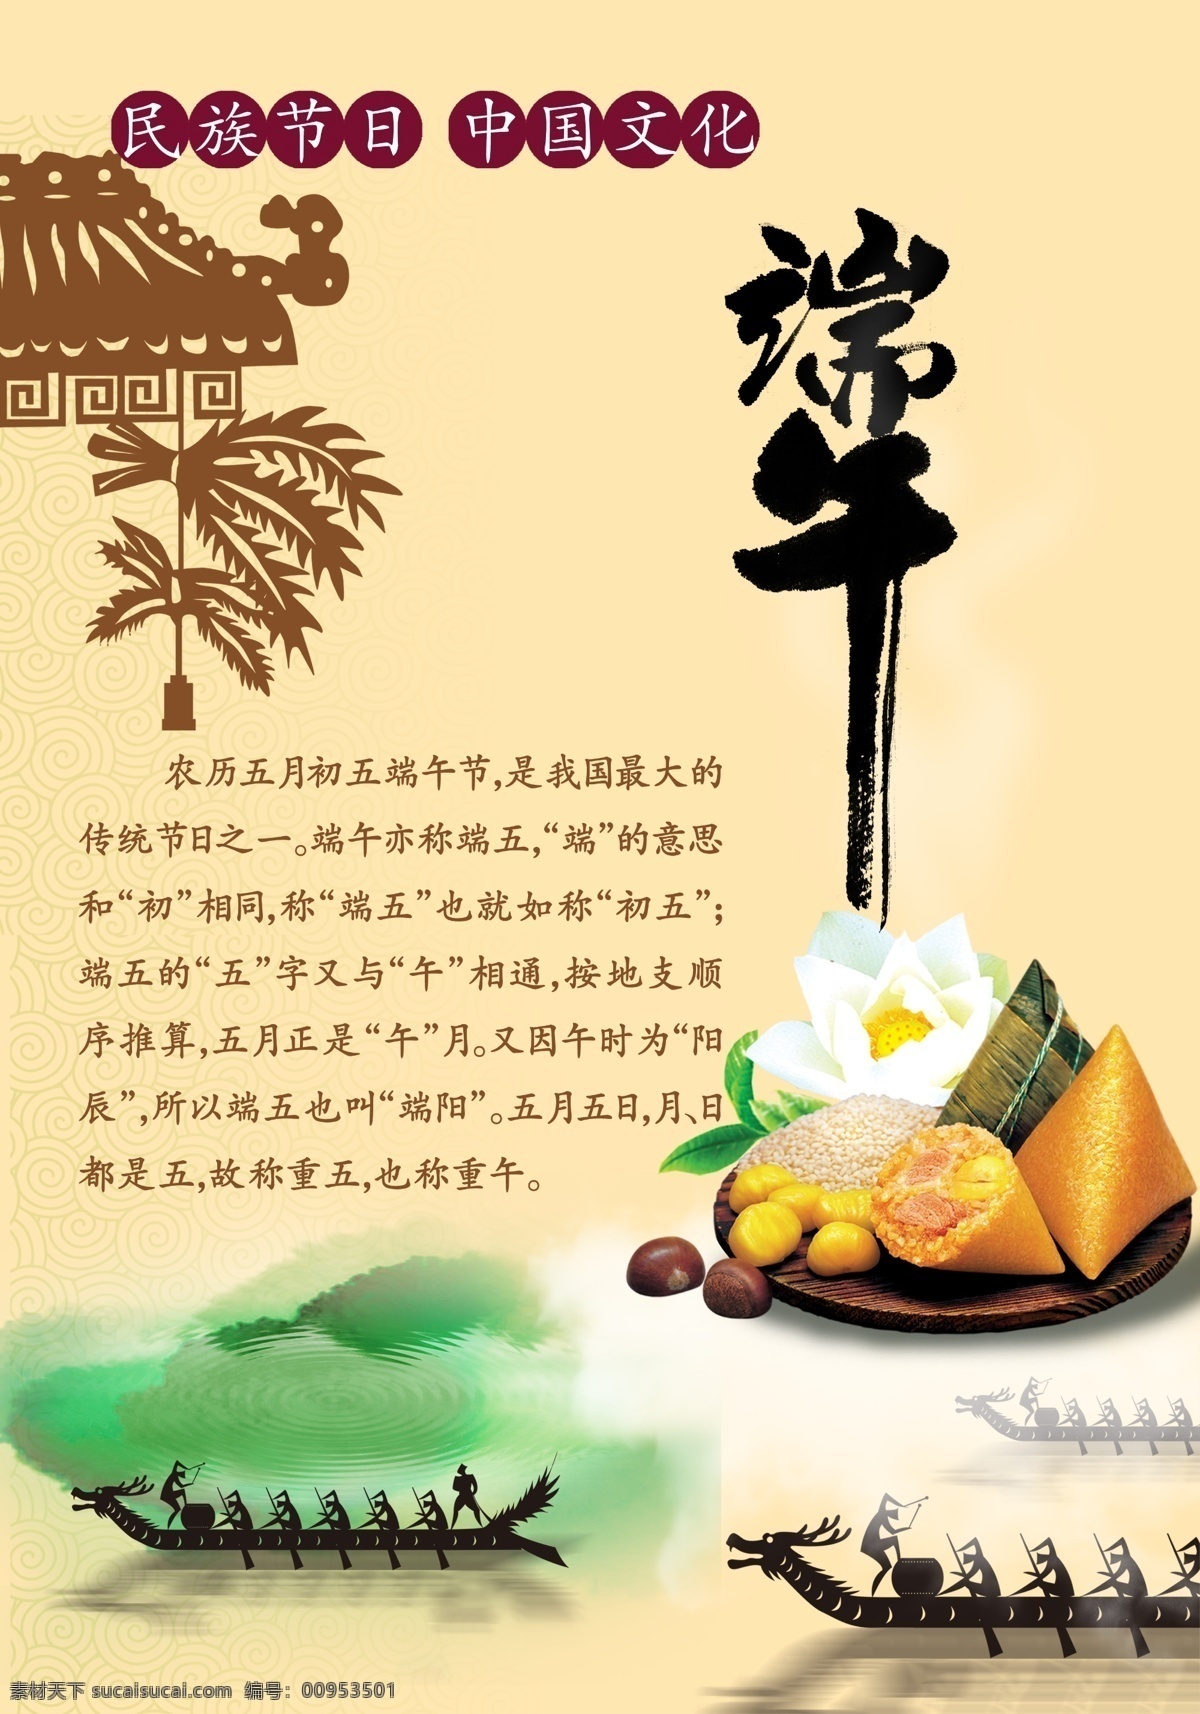 民族 节日 中国 文化 端午节 龙舟 粽子 端午节含义 原创设计 其他原创设计